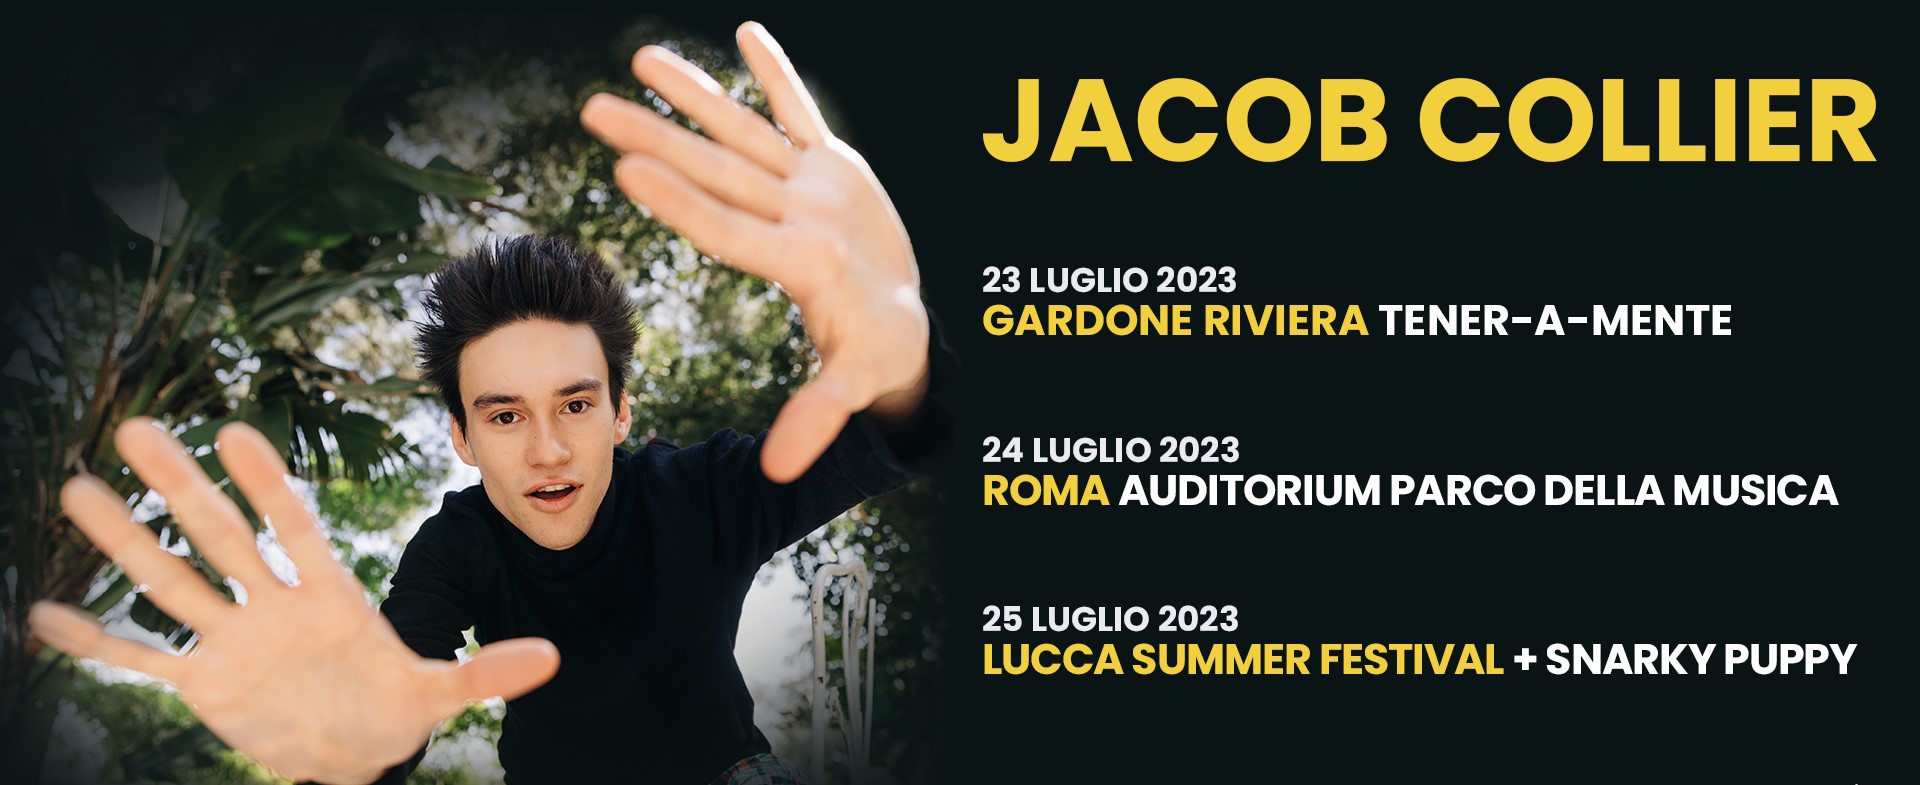 Jacob Collier concerti Italia